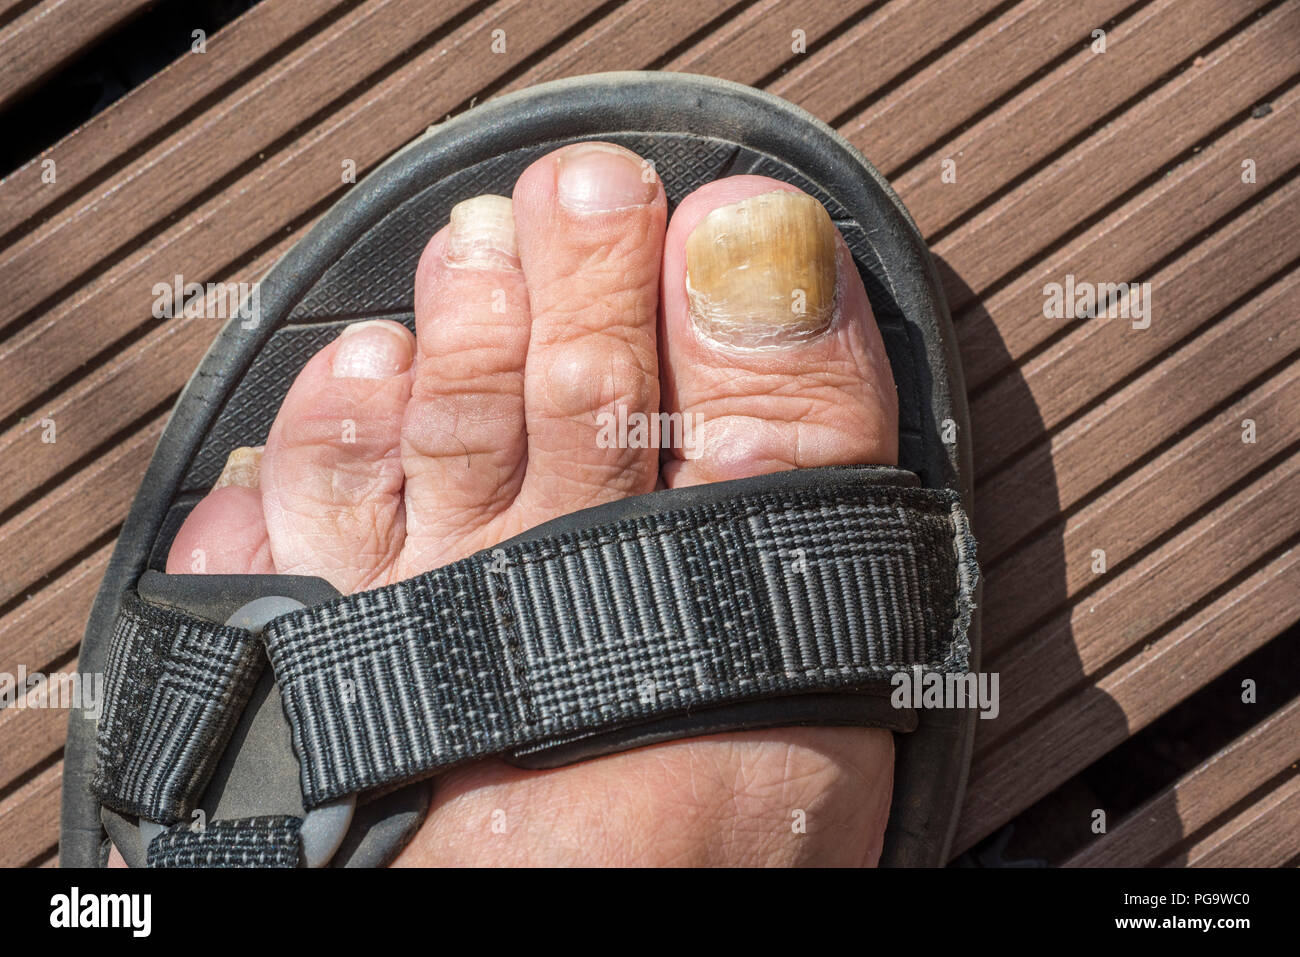 Au pied sandale montrant l'onychomycose / TINEA UNGUIUM, l'infection fongique des ongles d'orteil / Banque D'Images